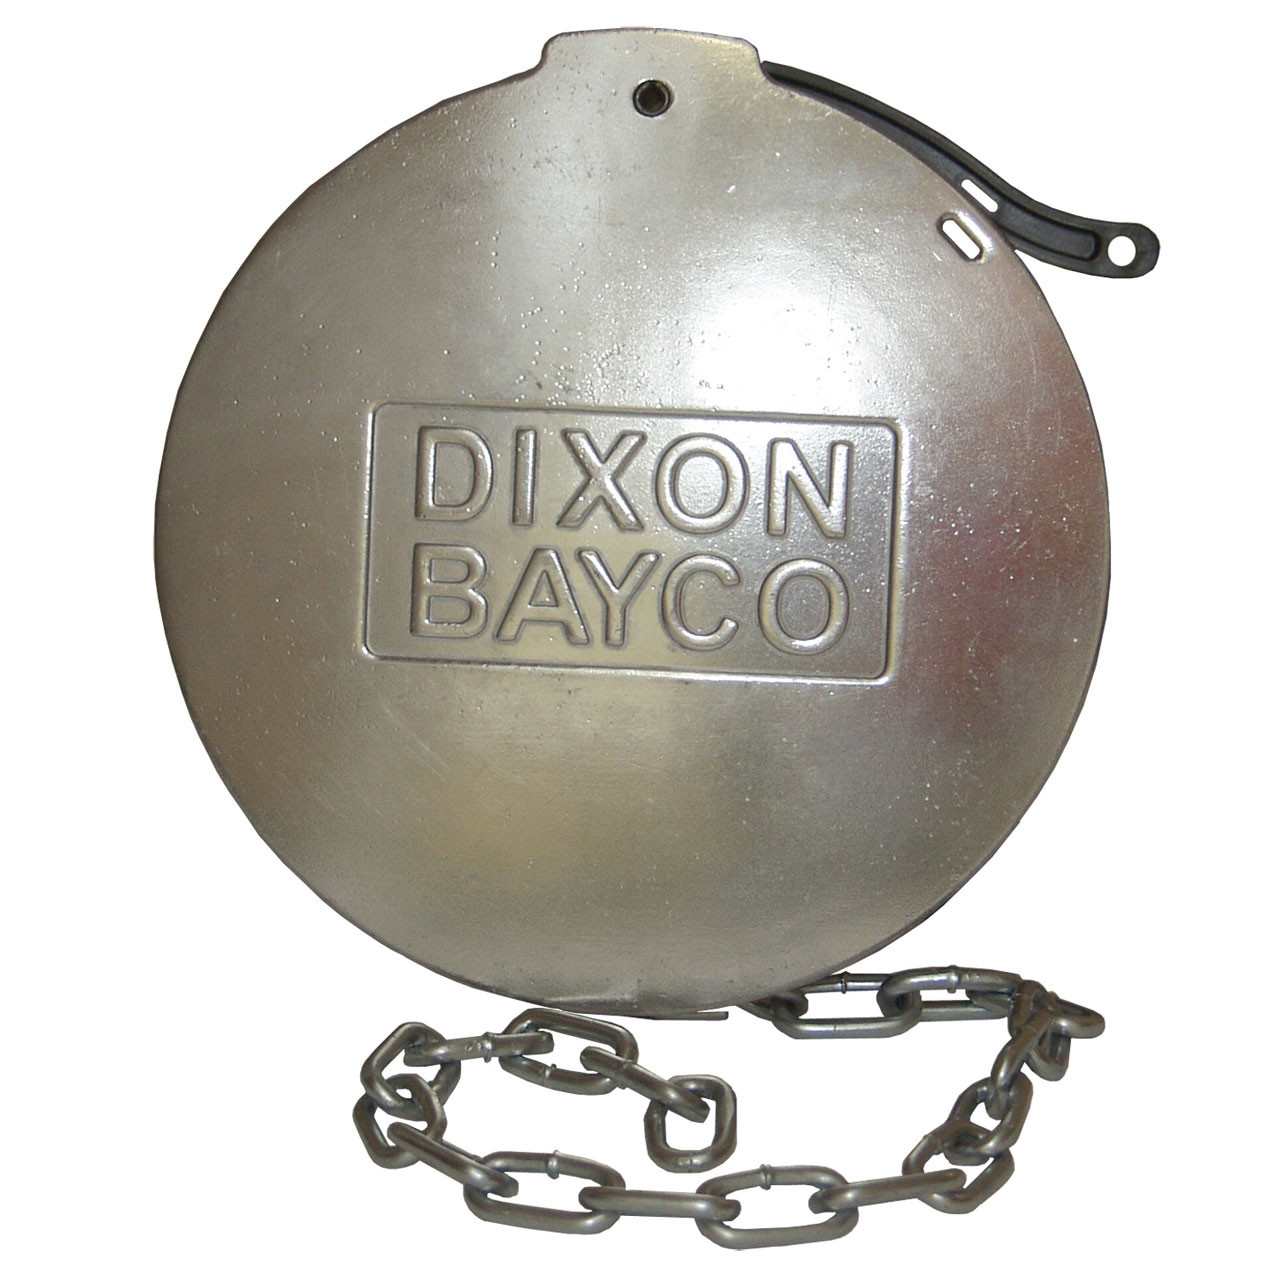 Dixon Bayco 4 in. Aluminum API Dust Cap w/ Quick Release Lever